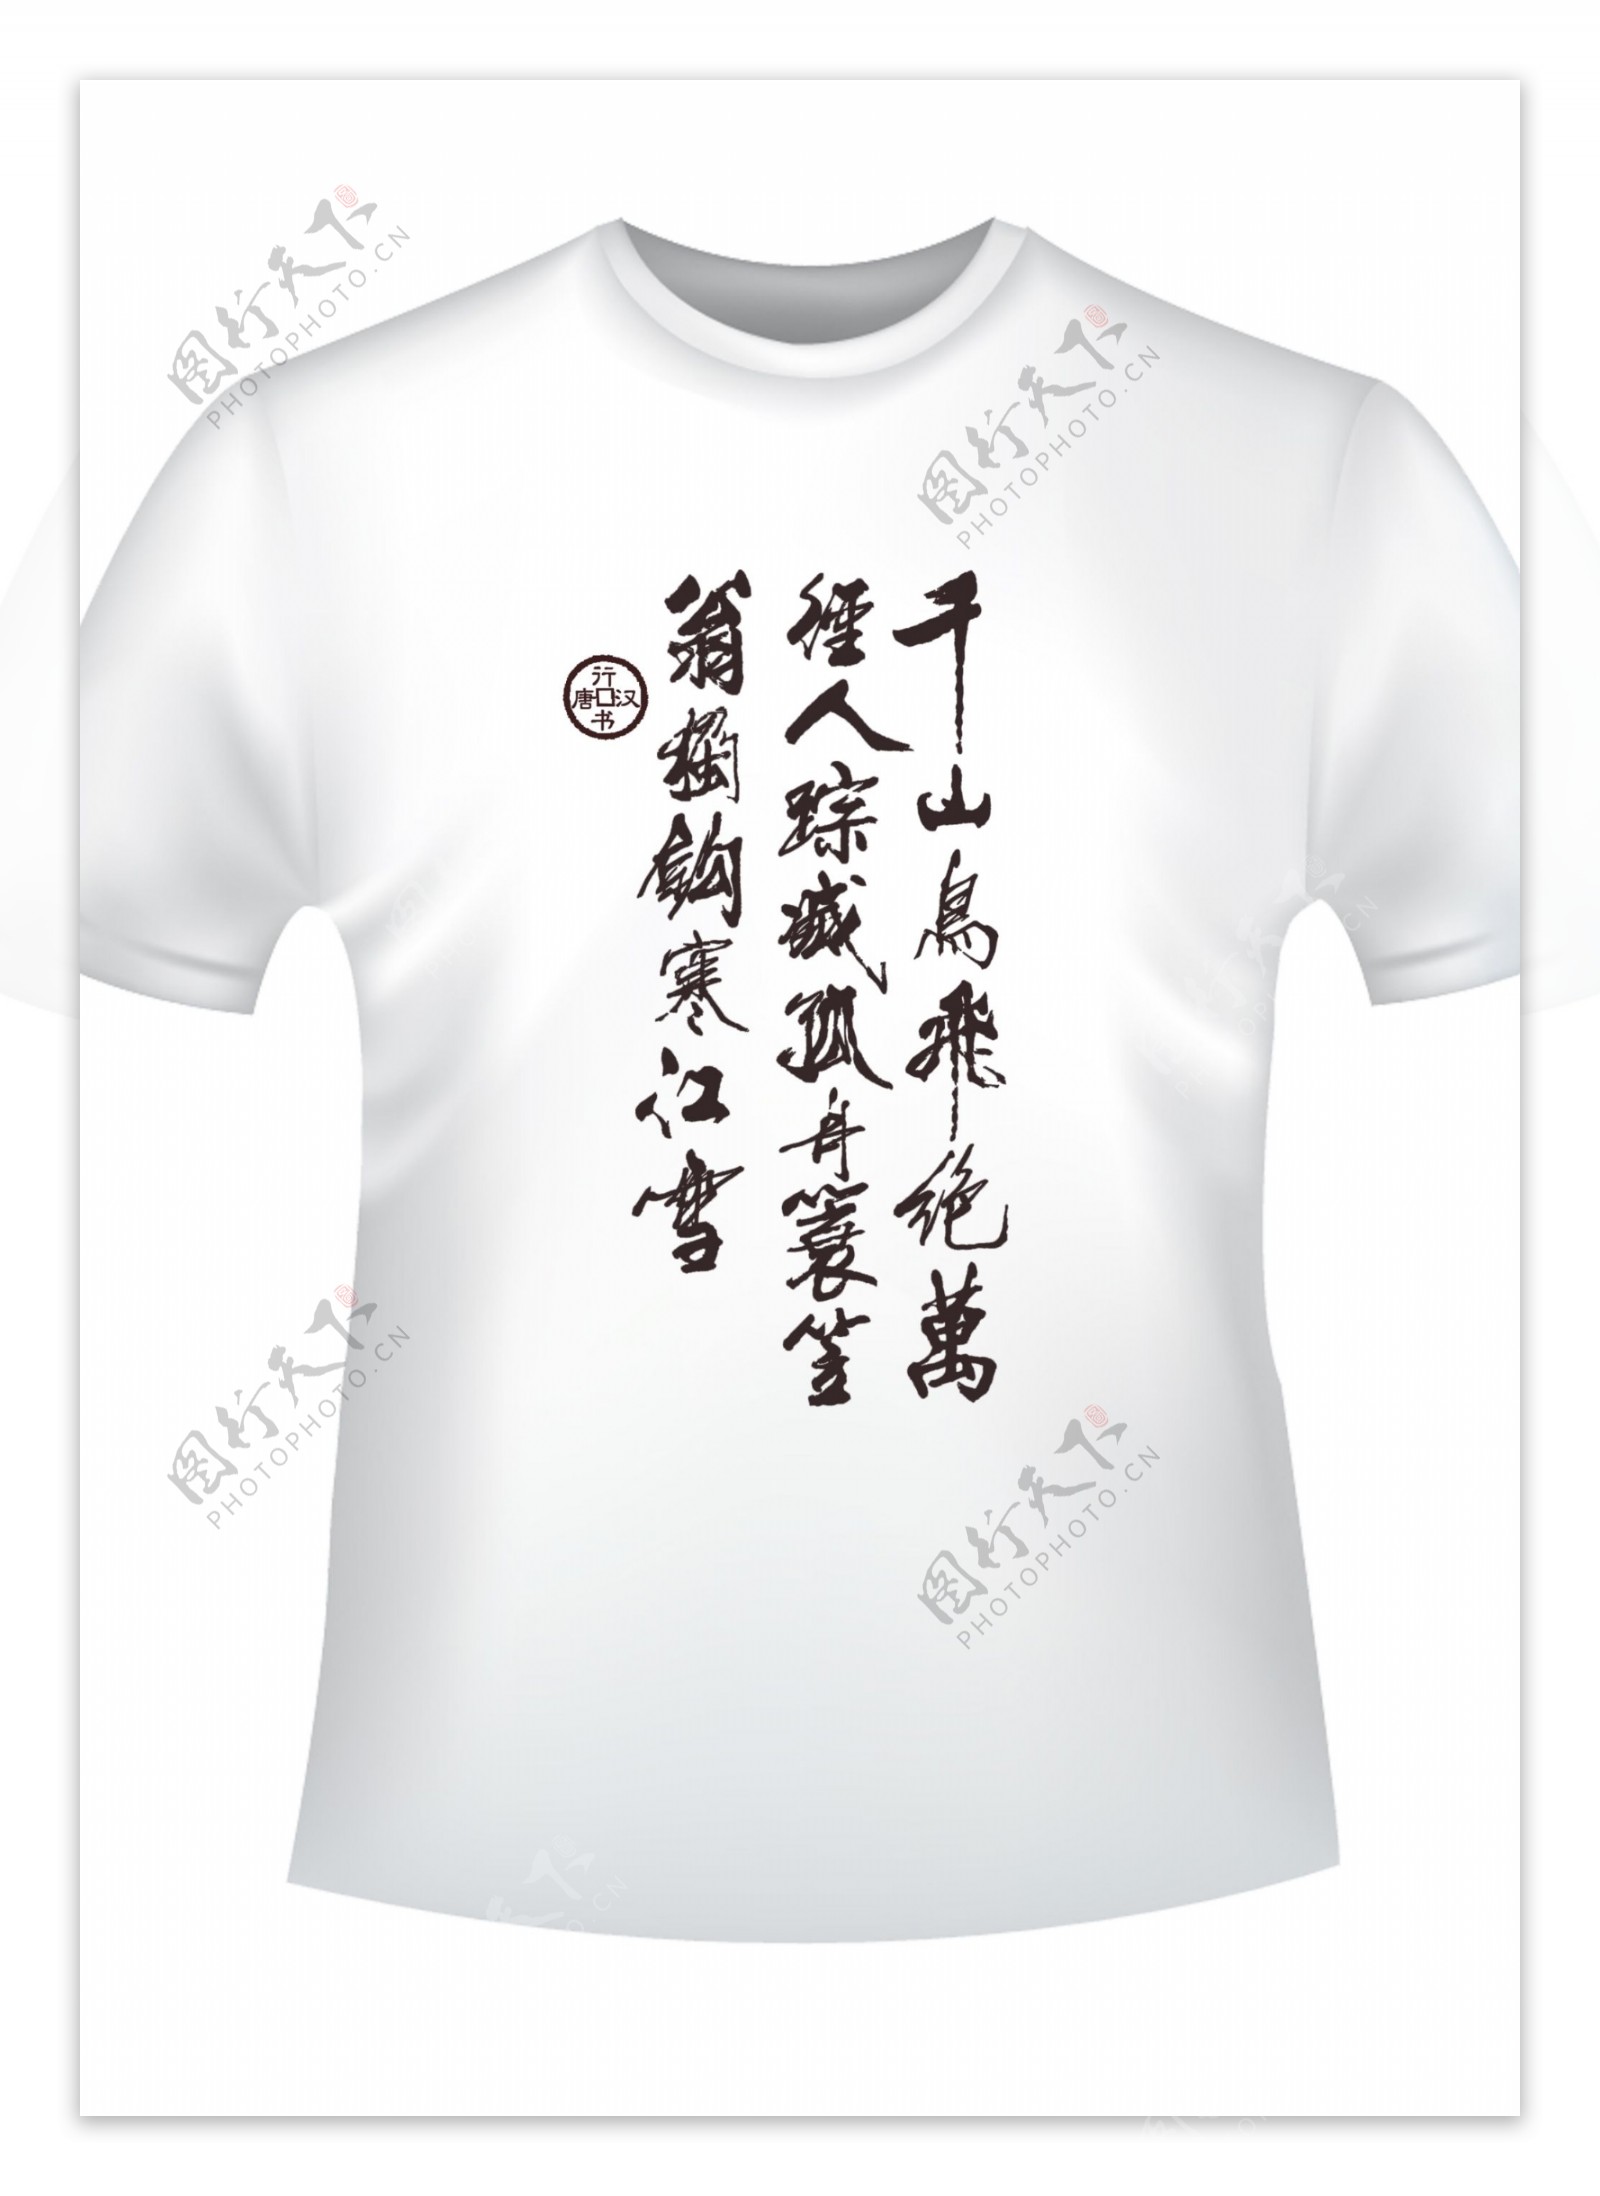 中国元素旅游文化衫图片